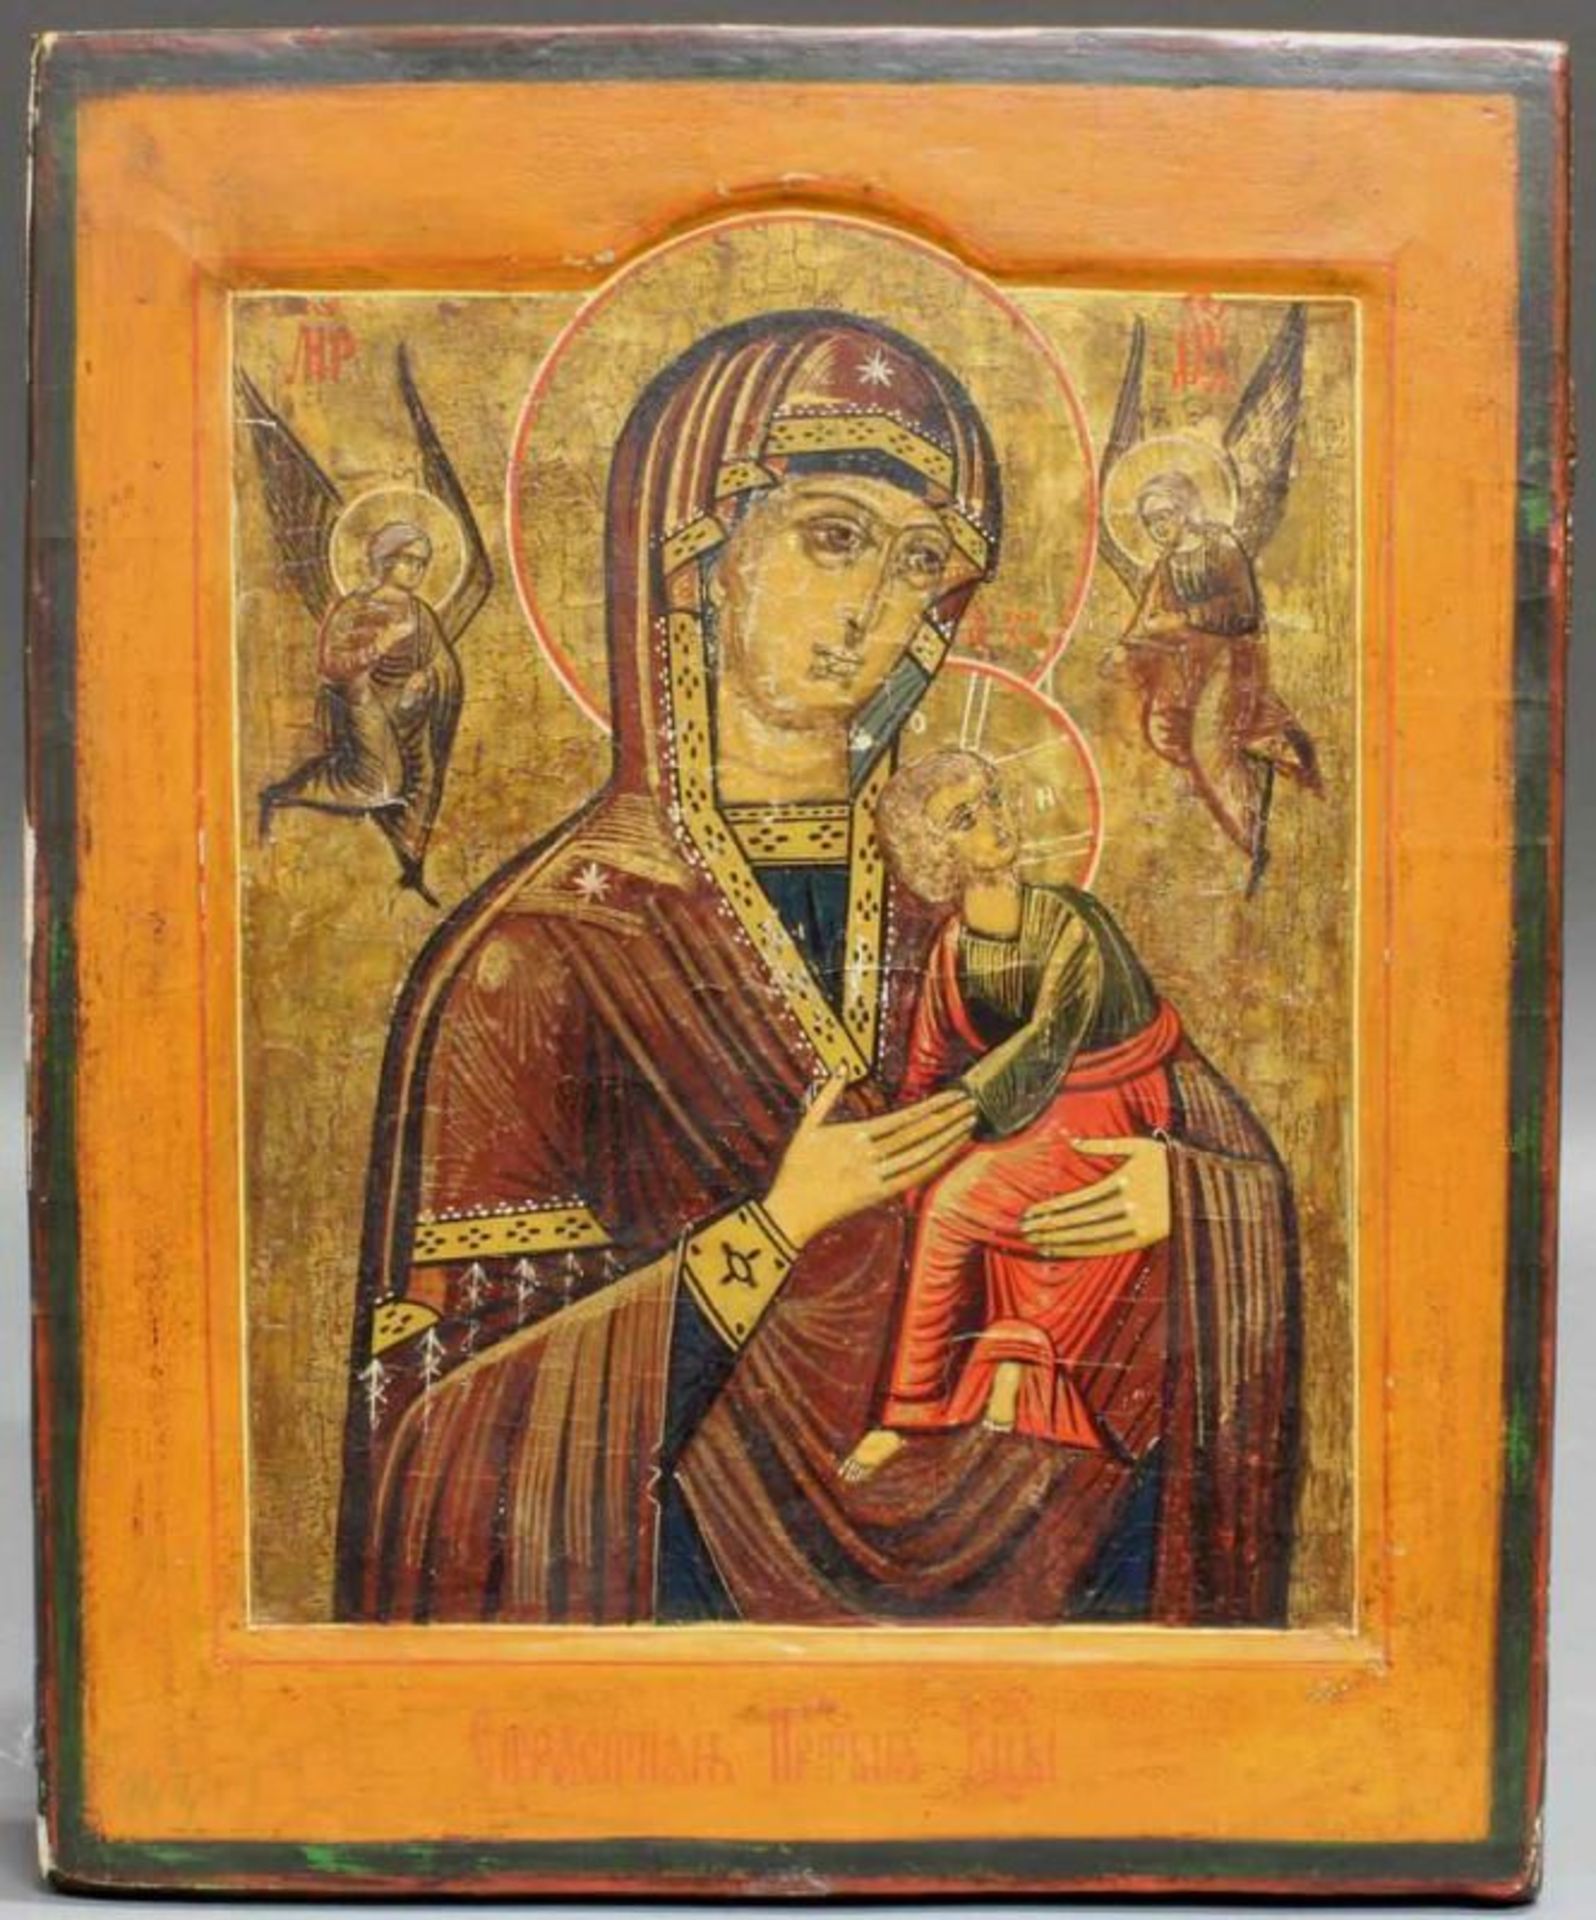 Ikone, Tempera auf Holz, "Gottesmutter der Passion", Russland, 19. Jh., 32.5 x 26.5 cm,